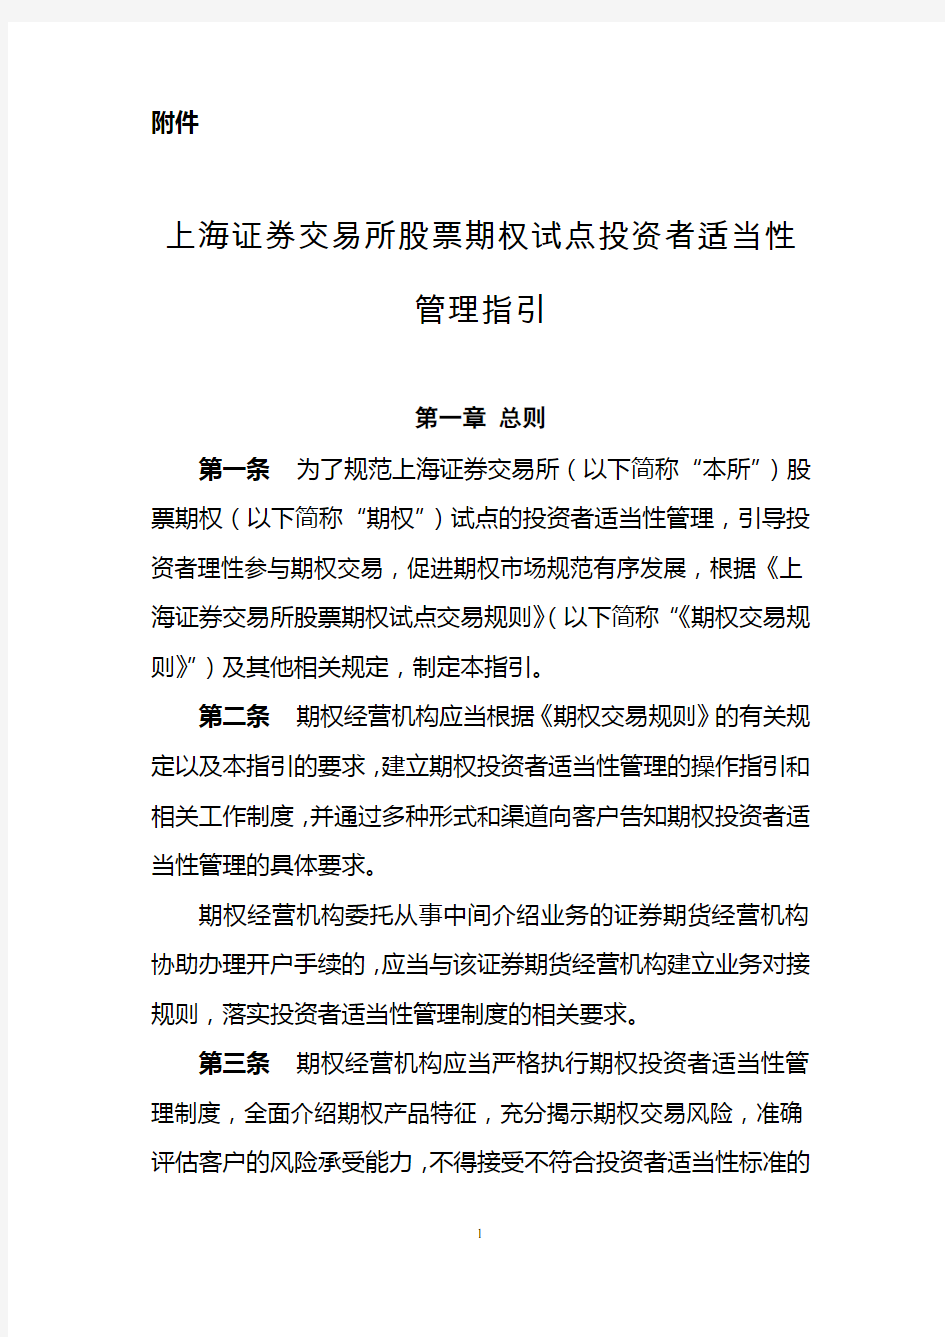 上海证券交易所股票期权试点投资者适当性管理指引